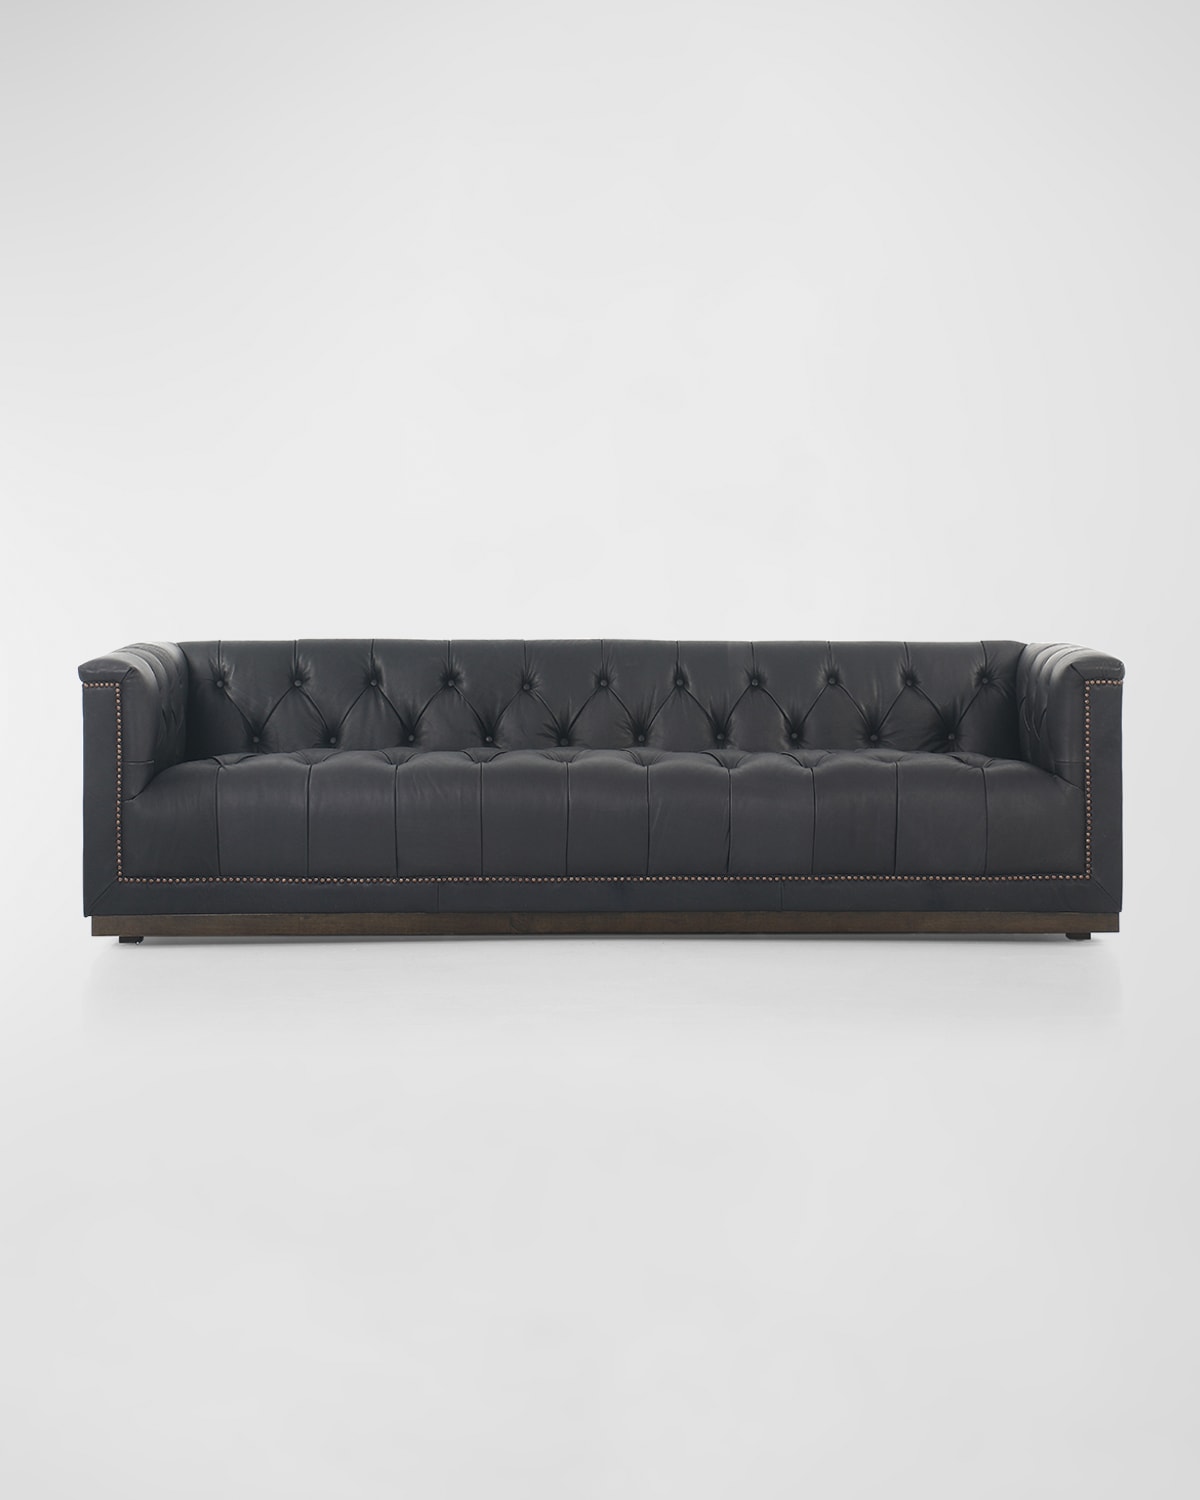 Maxx Leather Sofa - 95"